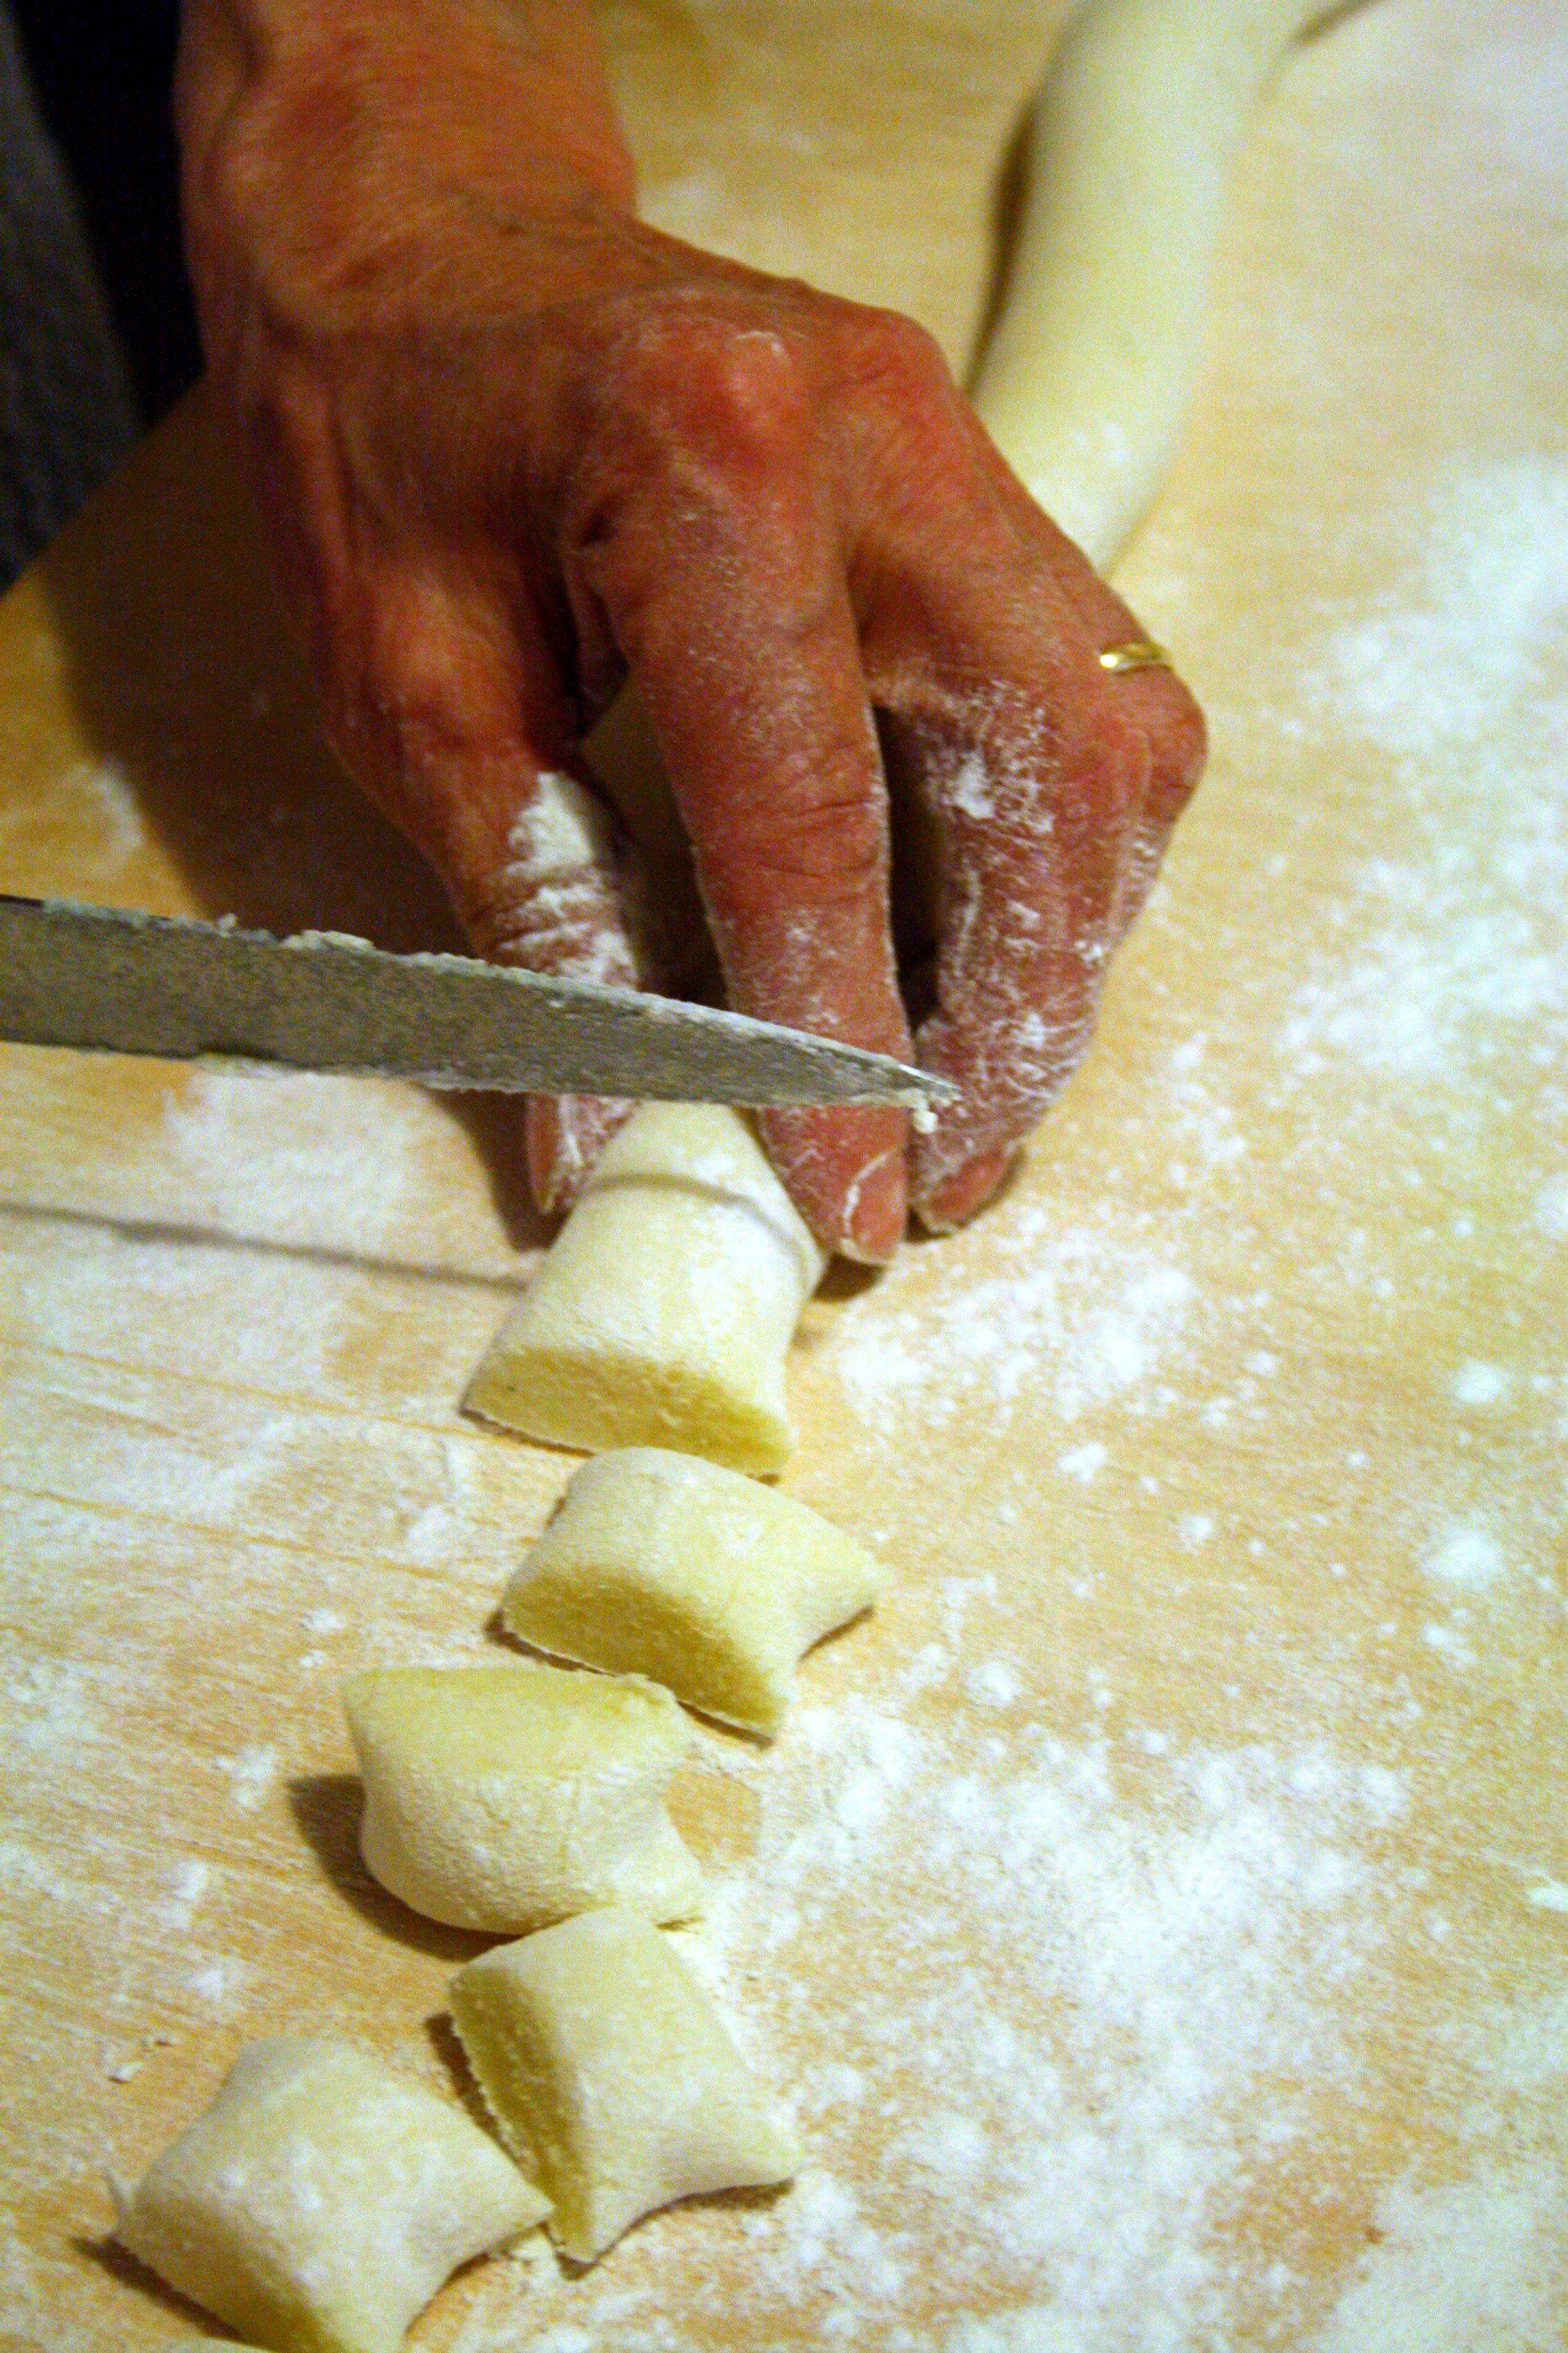 Man cutting pasta